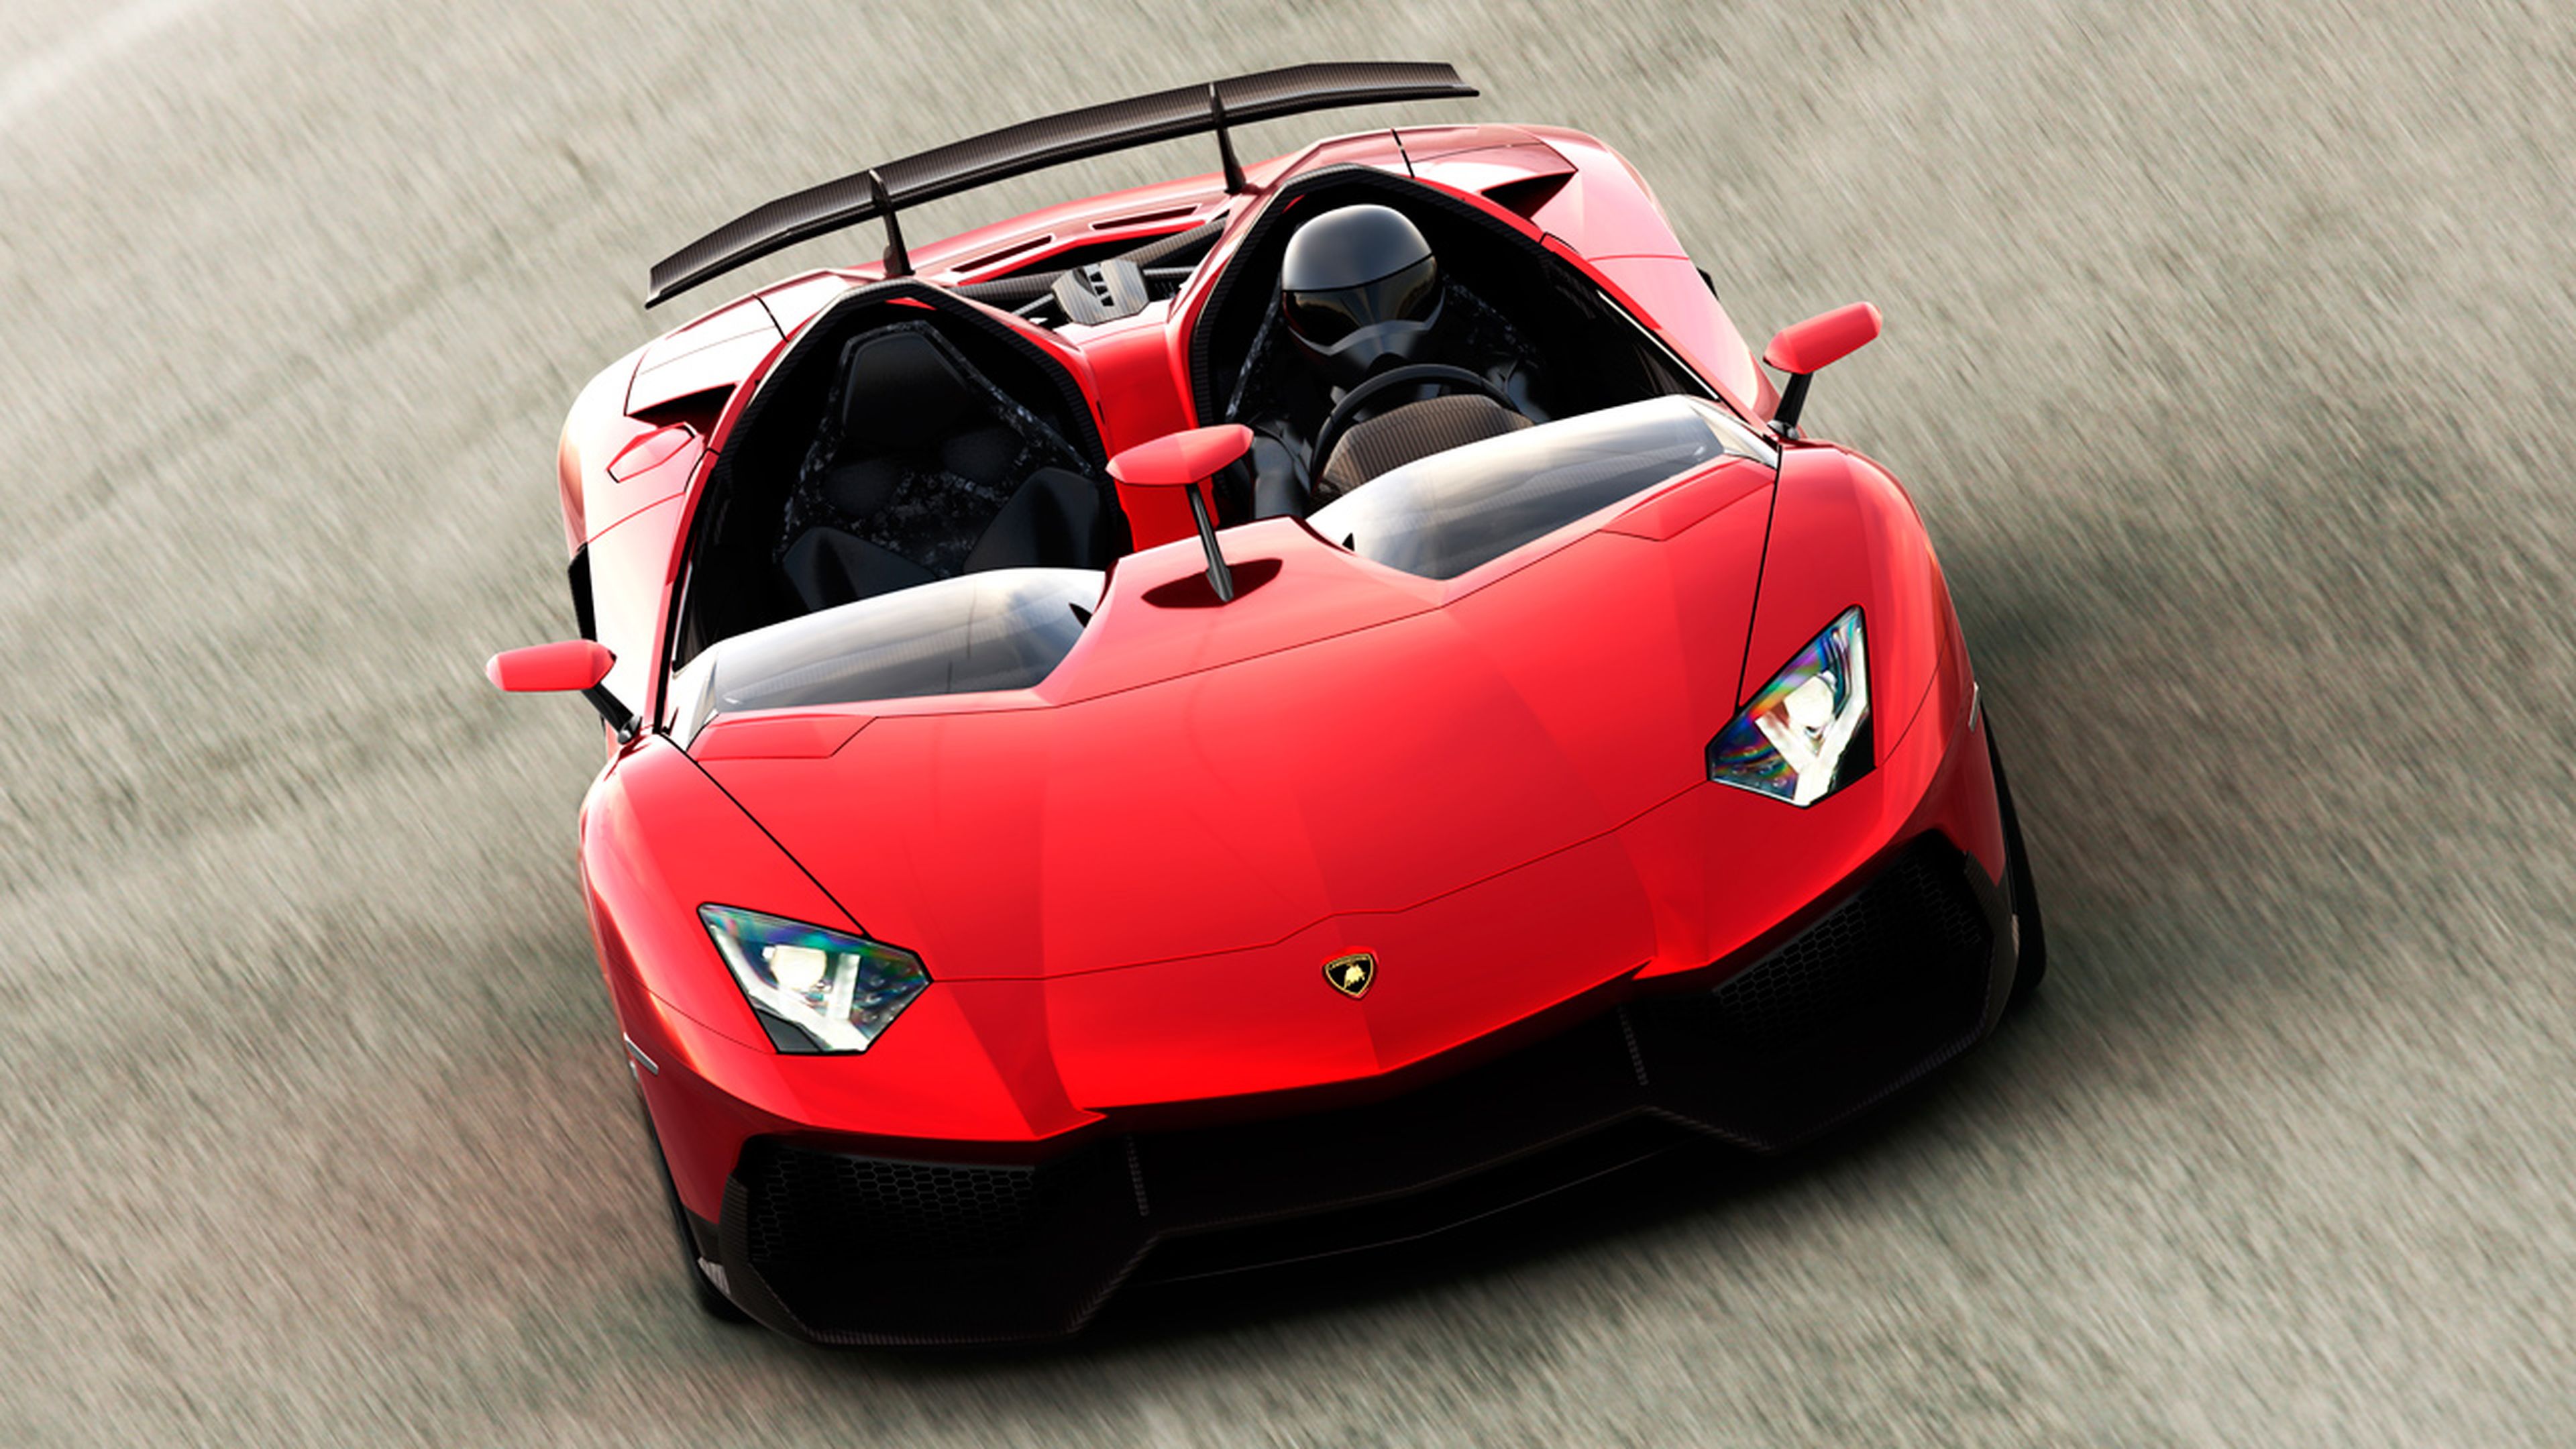 Un roadster más extremo. Así es el Aventador J con el que se puede ir a 300 km/h sin capota. Foto: Lamborghini